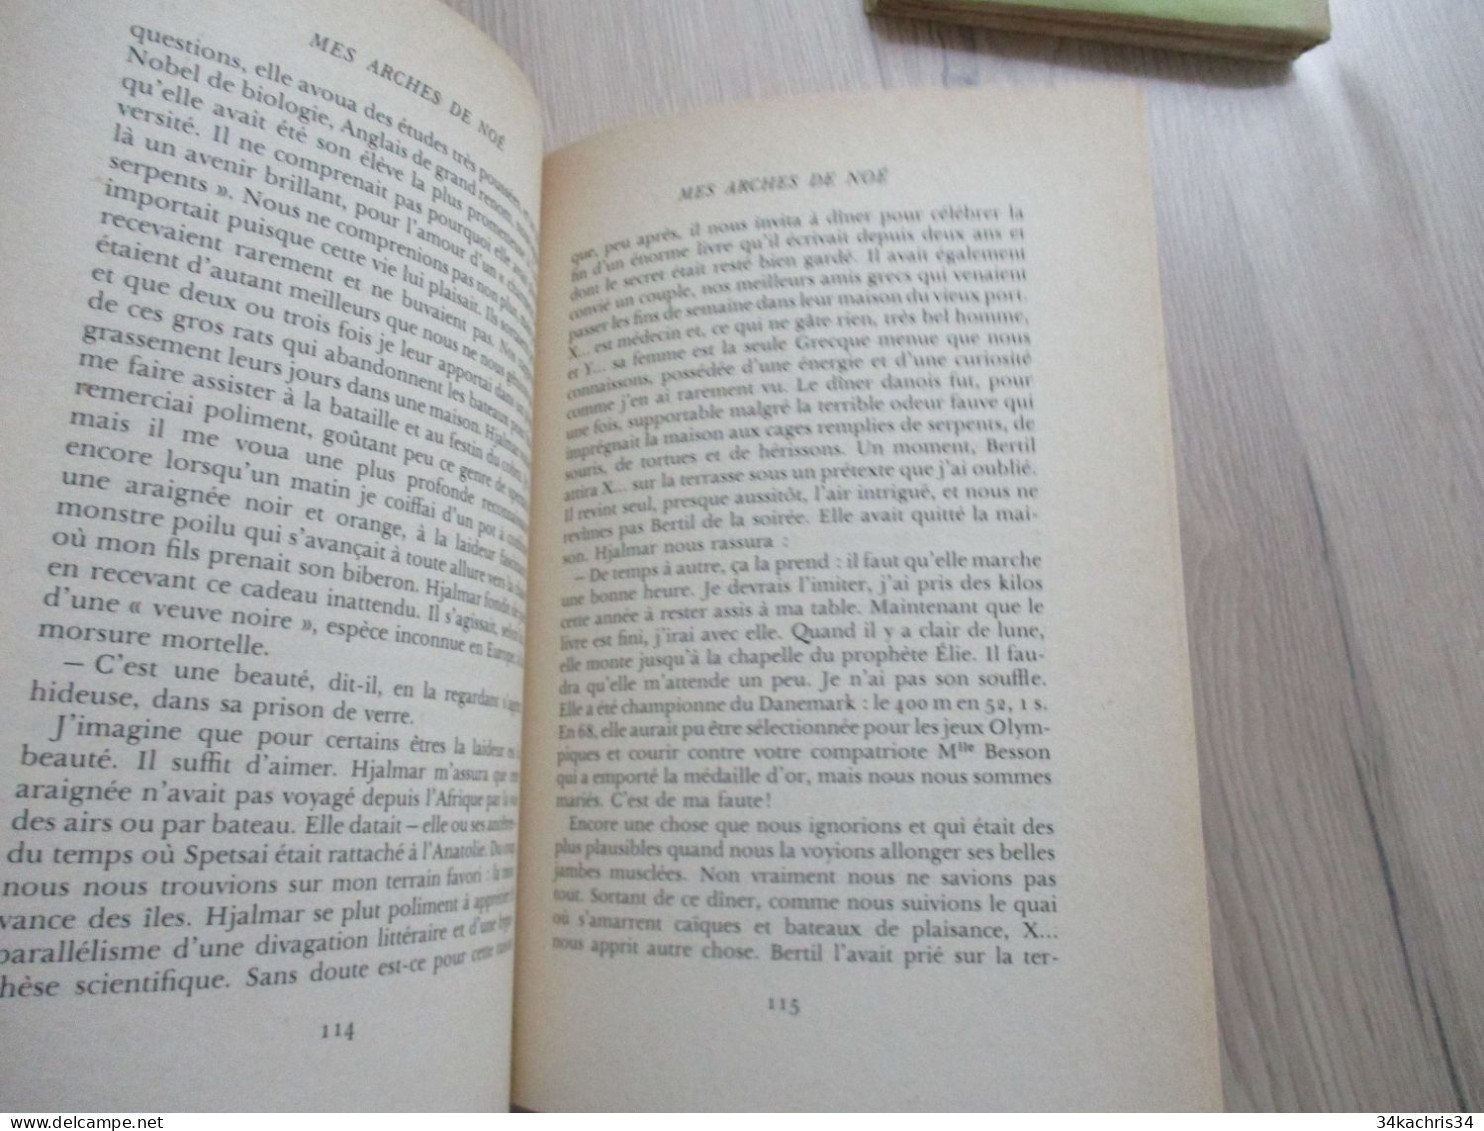 Envoi M.Déon Mes Arches de Noè La table ronde 1978 283 p première édition